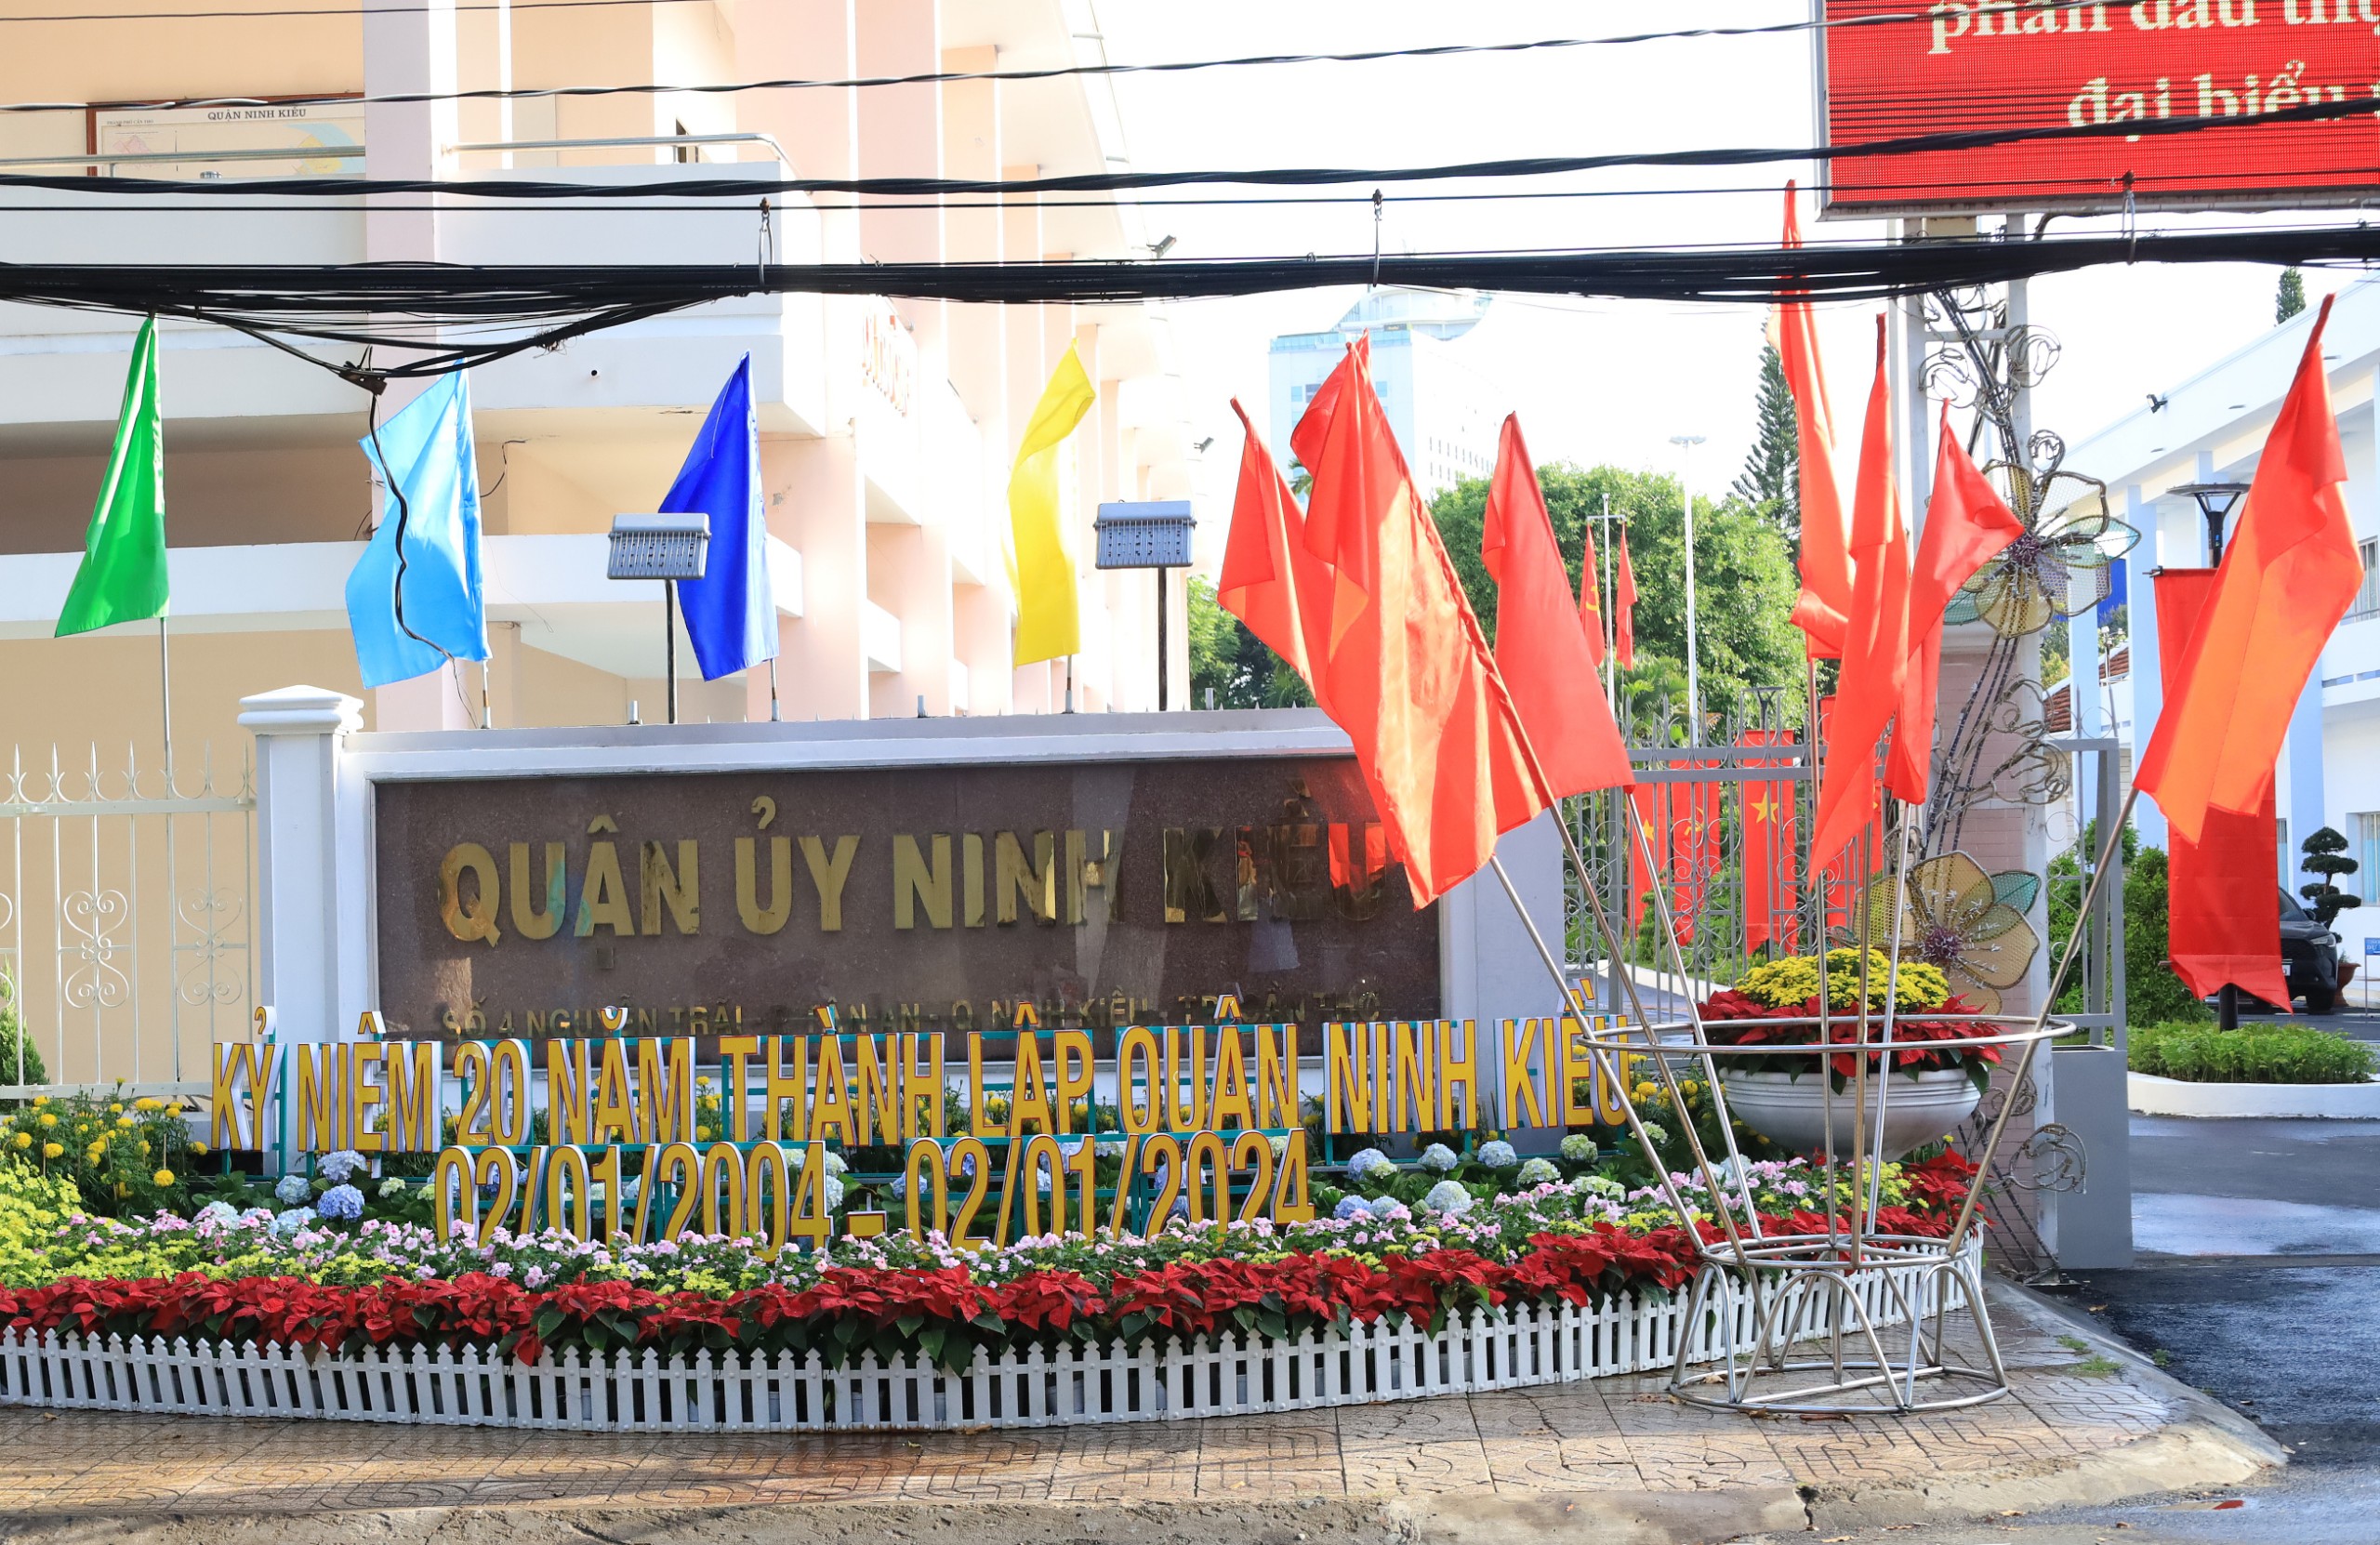 Trụ sở Quận ủy Ninh Kiều được trang trí Chào mừng sự kiện Kỷ niệm 20 năm TP. Cần Thơ trực thuộc Trung ương (01/01/2004 – 01/01/2024) và 20 năm thành lập quận Ninh Kiều (02/01/2004 – 02/01/2024).